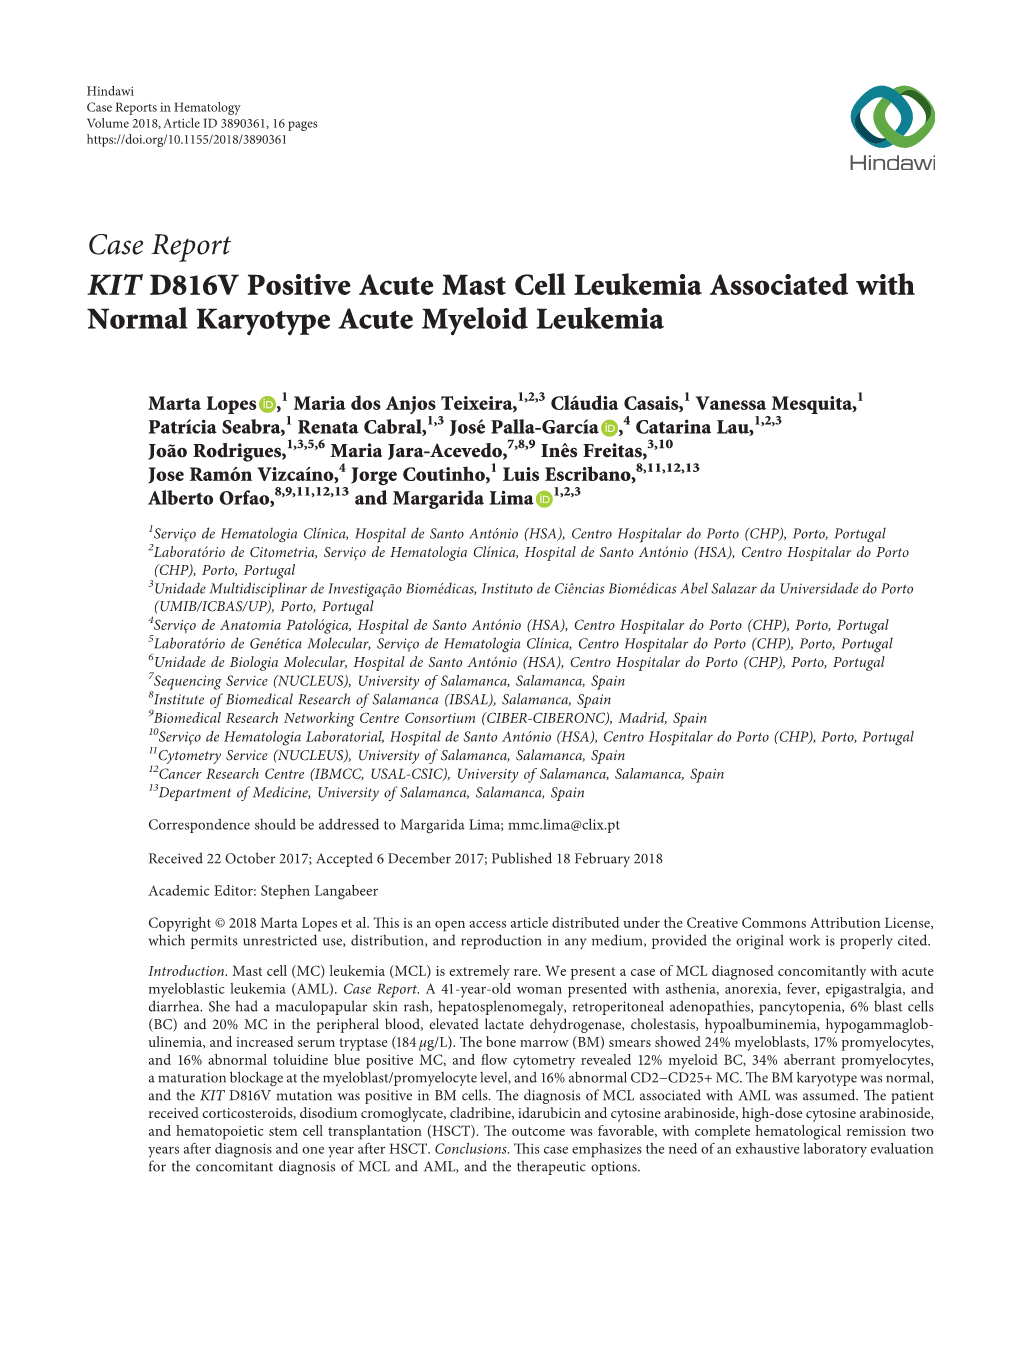 KIT D816V Positive Acute Mast Cell Leukemia Associated with Normal Karyotype Acute Myeloid Leukemia